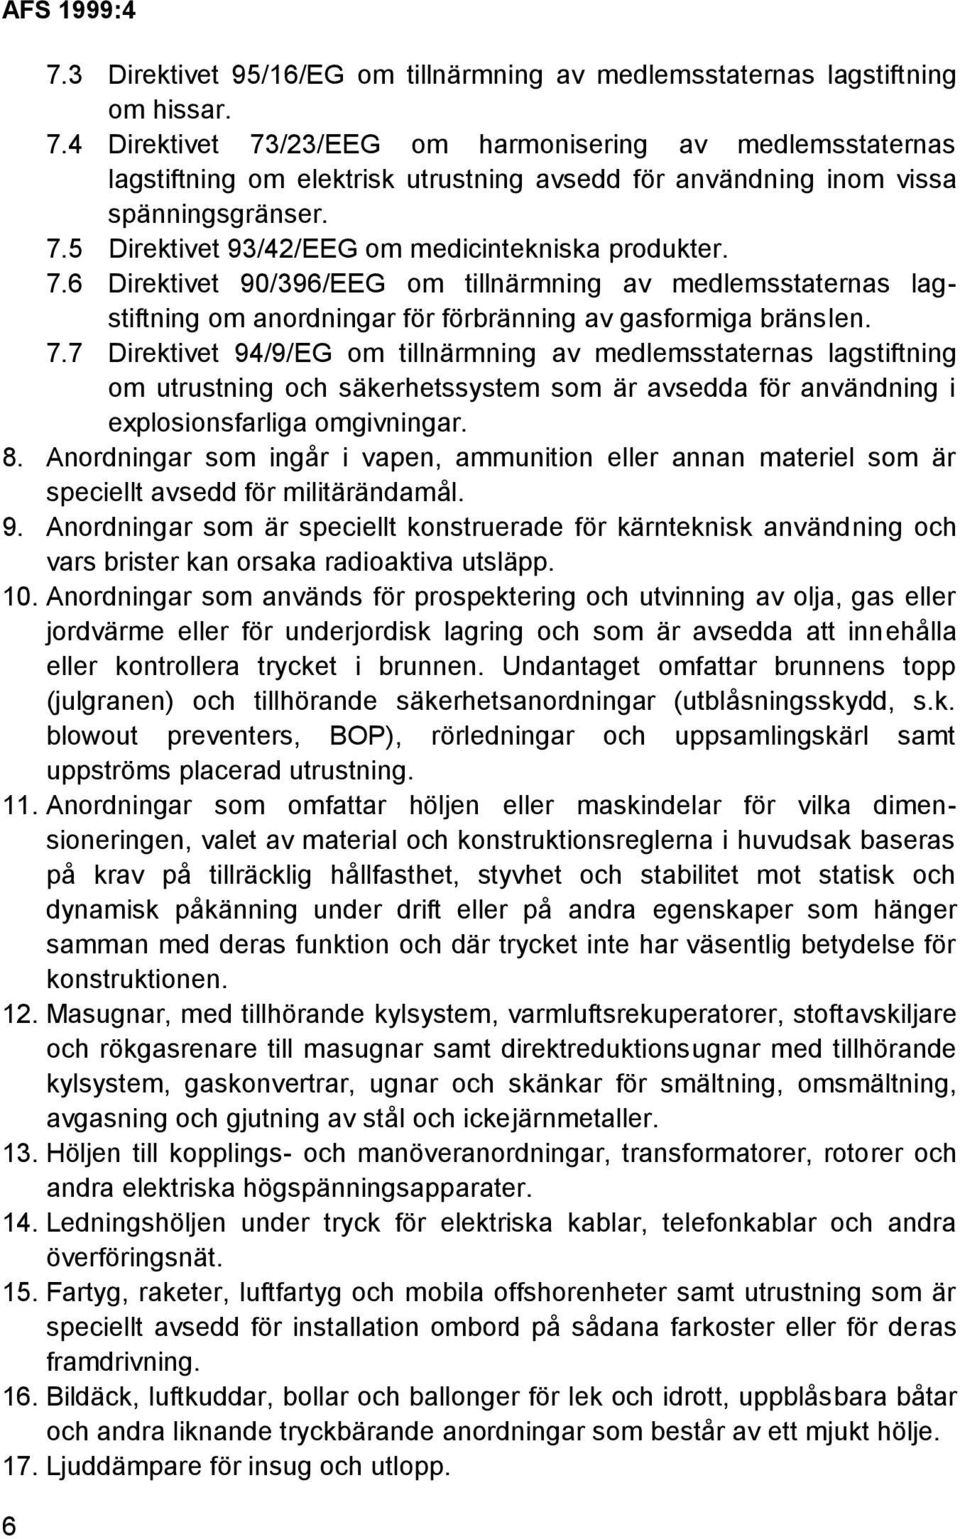 7.6 Direktivet 90/396/EEG om tillnärmning av medlemsstaternas lagstiftning om anordningar för förbränning av gasformiga bränslen. 7.